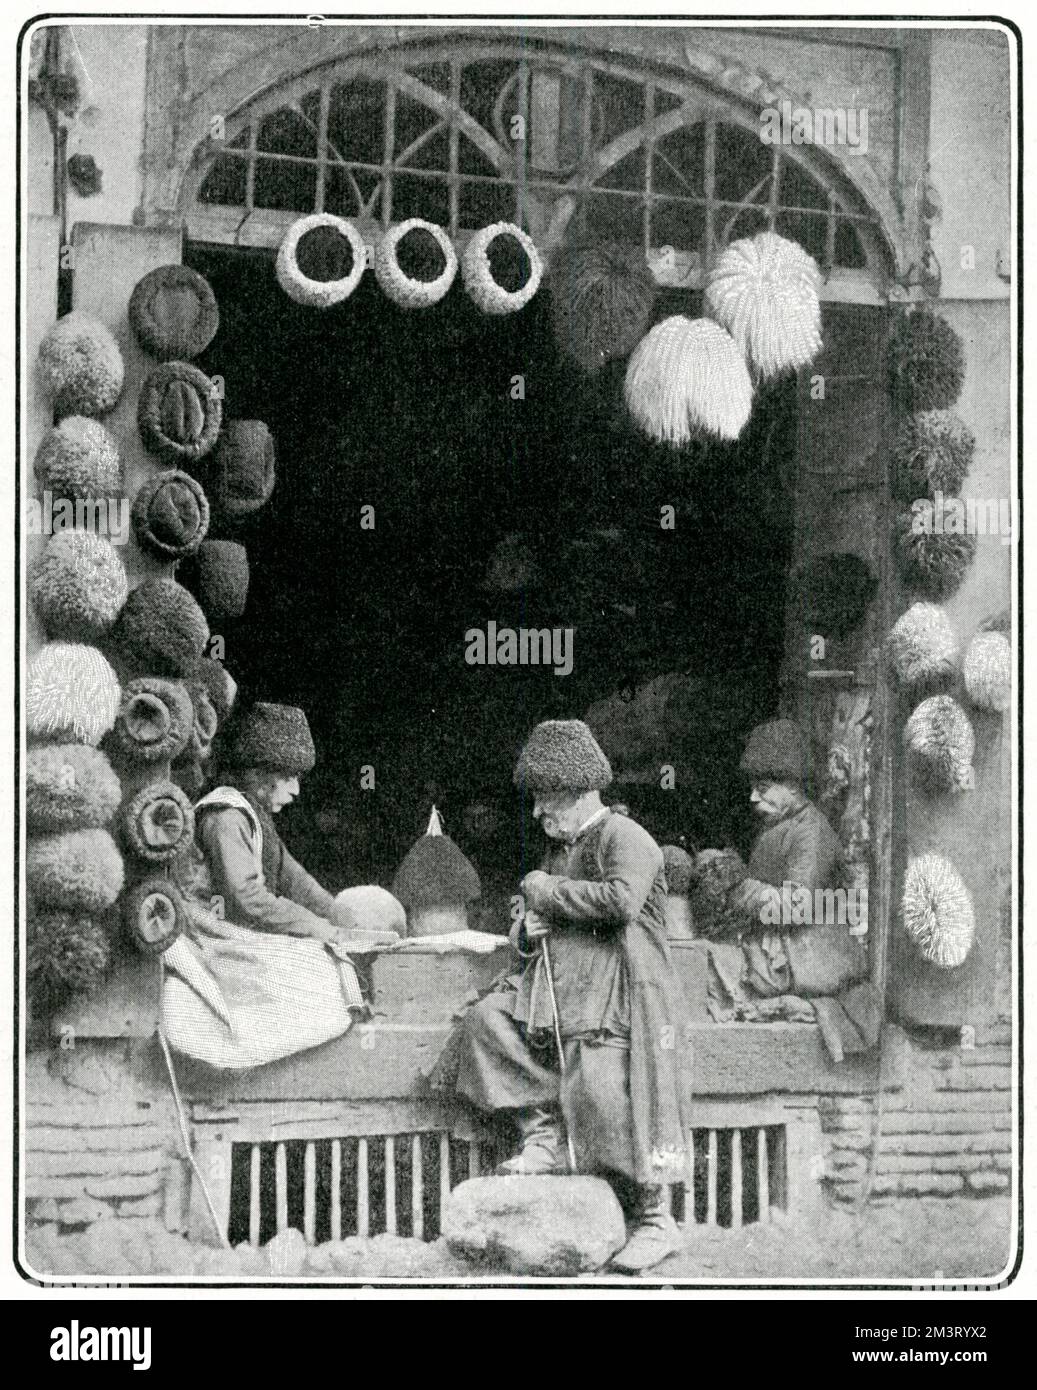 Une boutique de chapeaux, vendant des chapeaux traditionnels de fourrure et de peau à Tiflis, Tibilisi moderne, capitale de la Géorgie. Date: 1903 Banque D'Images